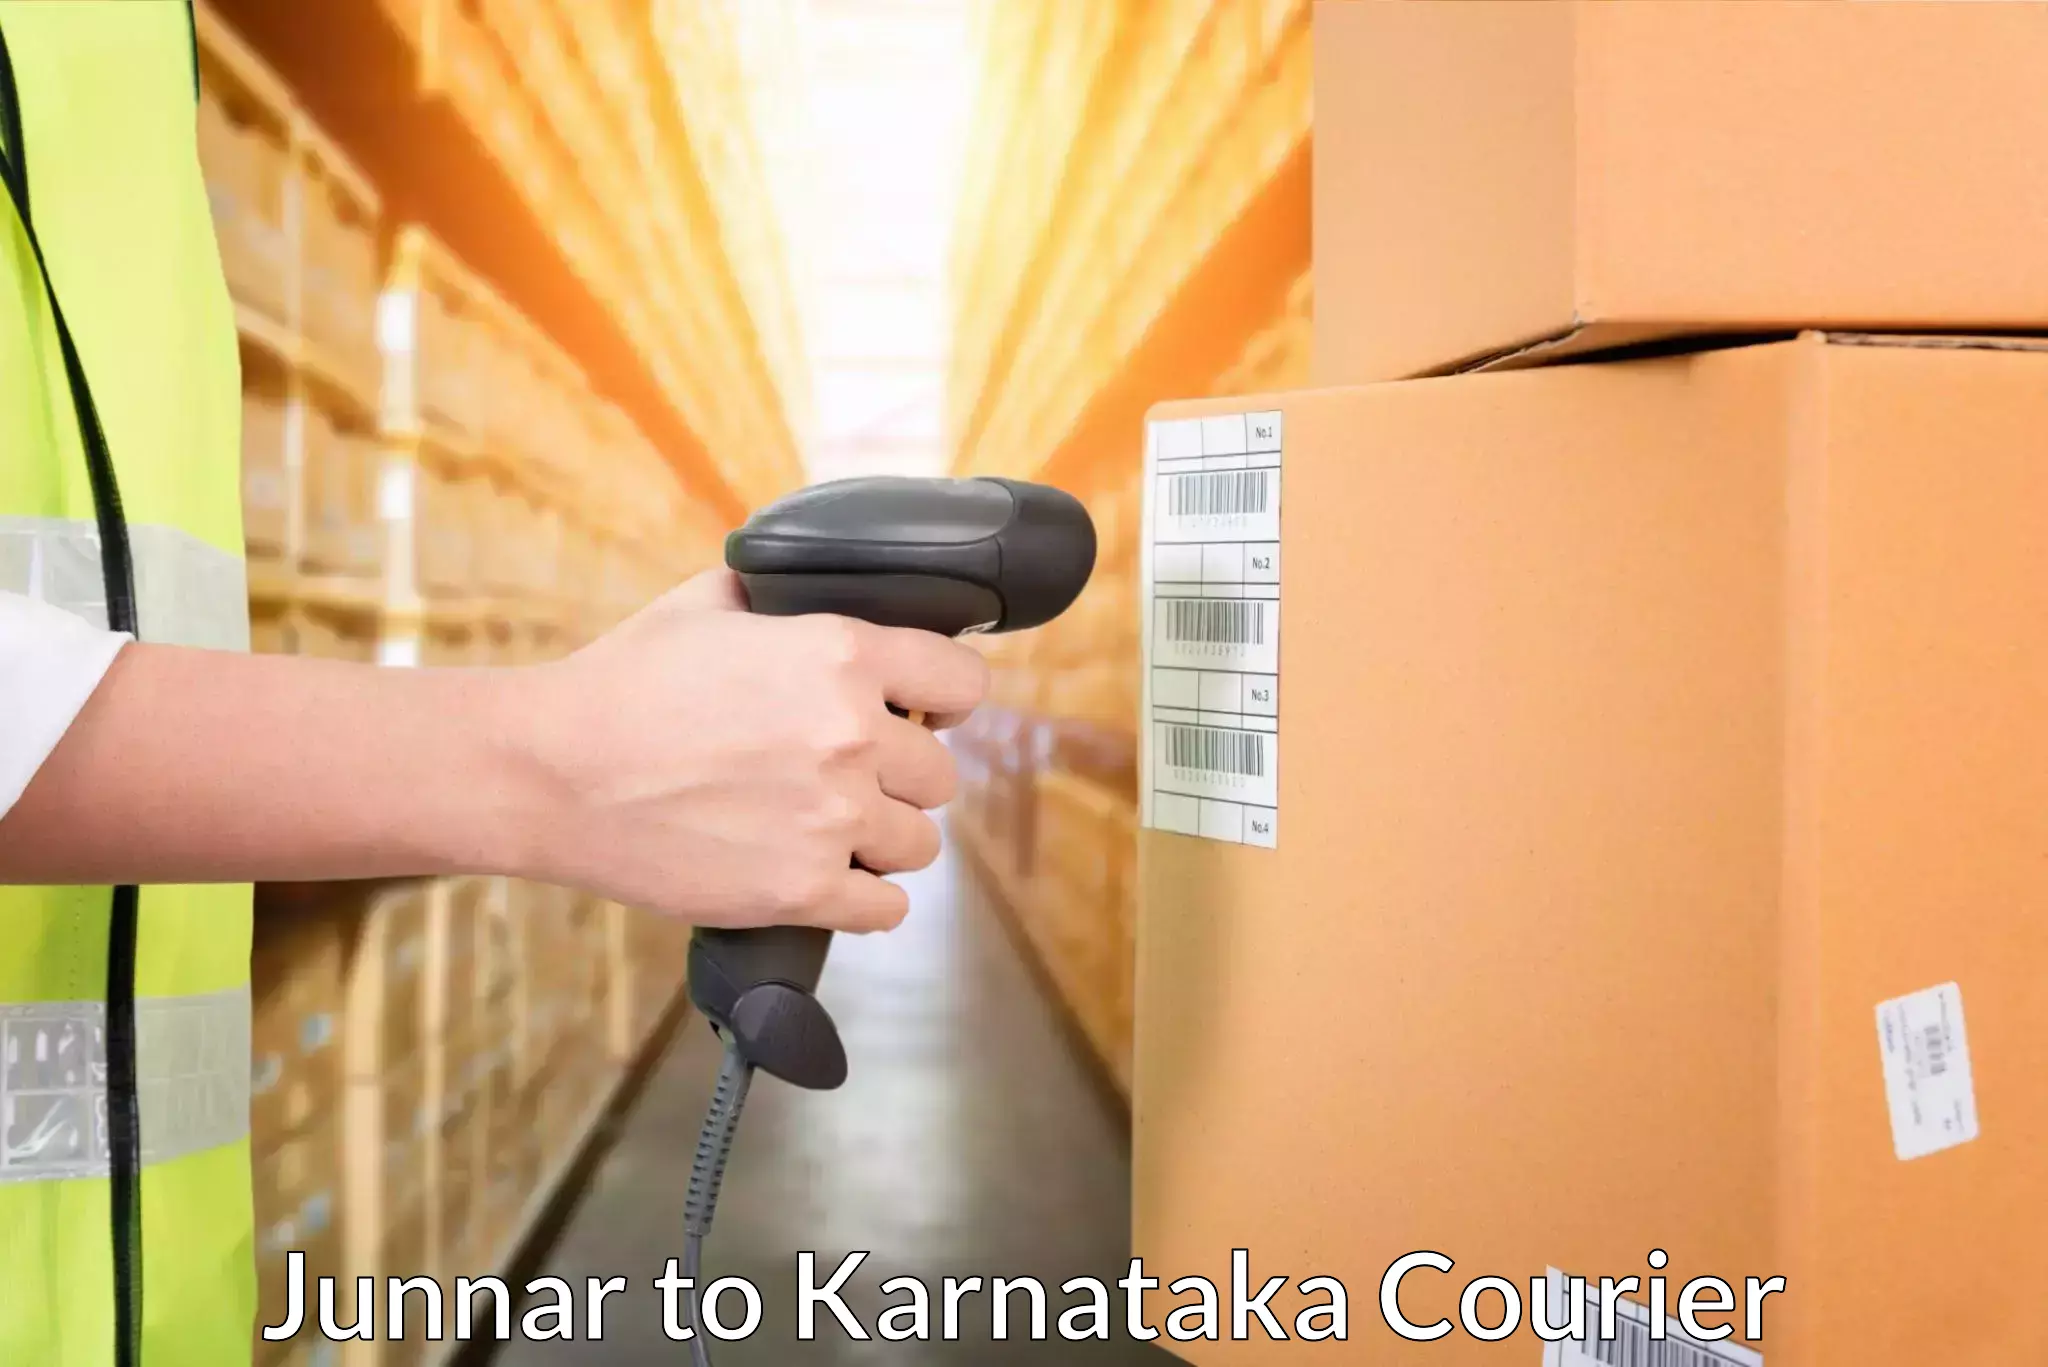 Efficient cargo handling Junnar to Karnataka